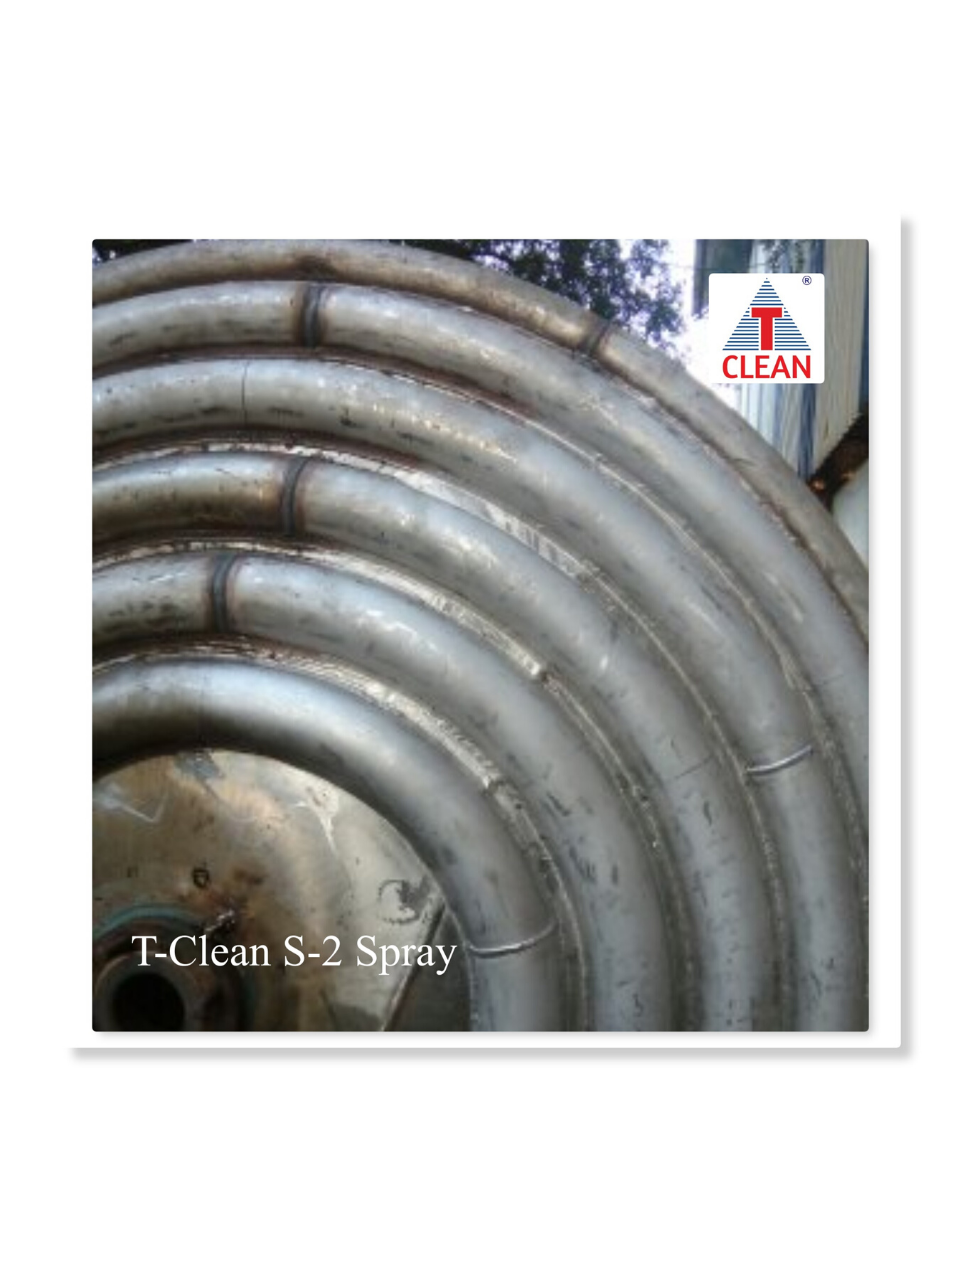 T-Clean Stainless Steel Weld Clean Gel S-1